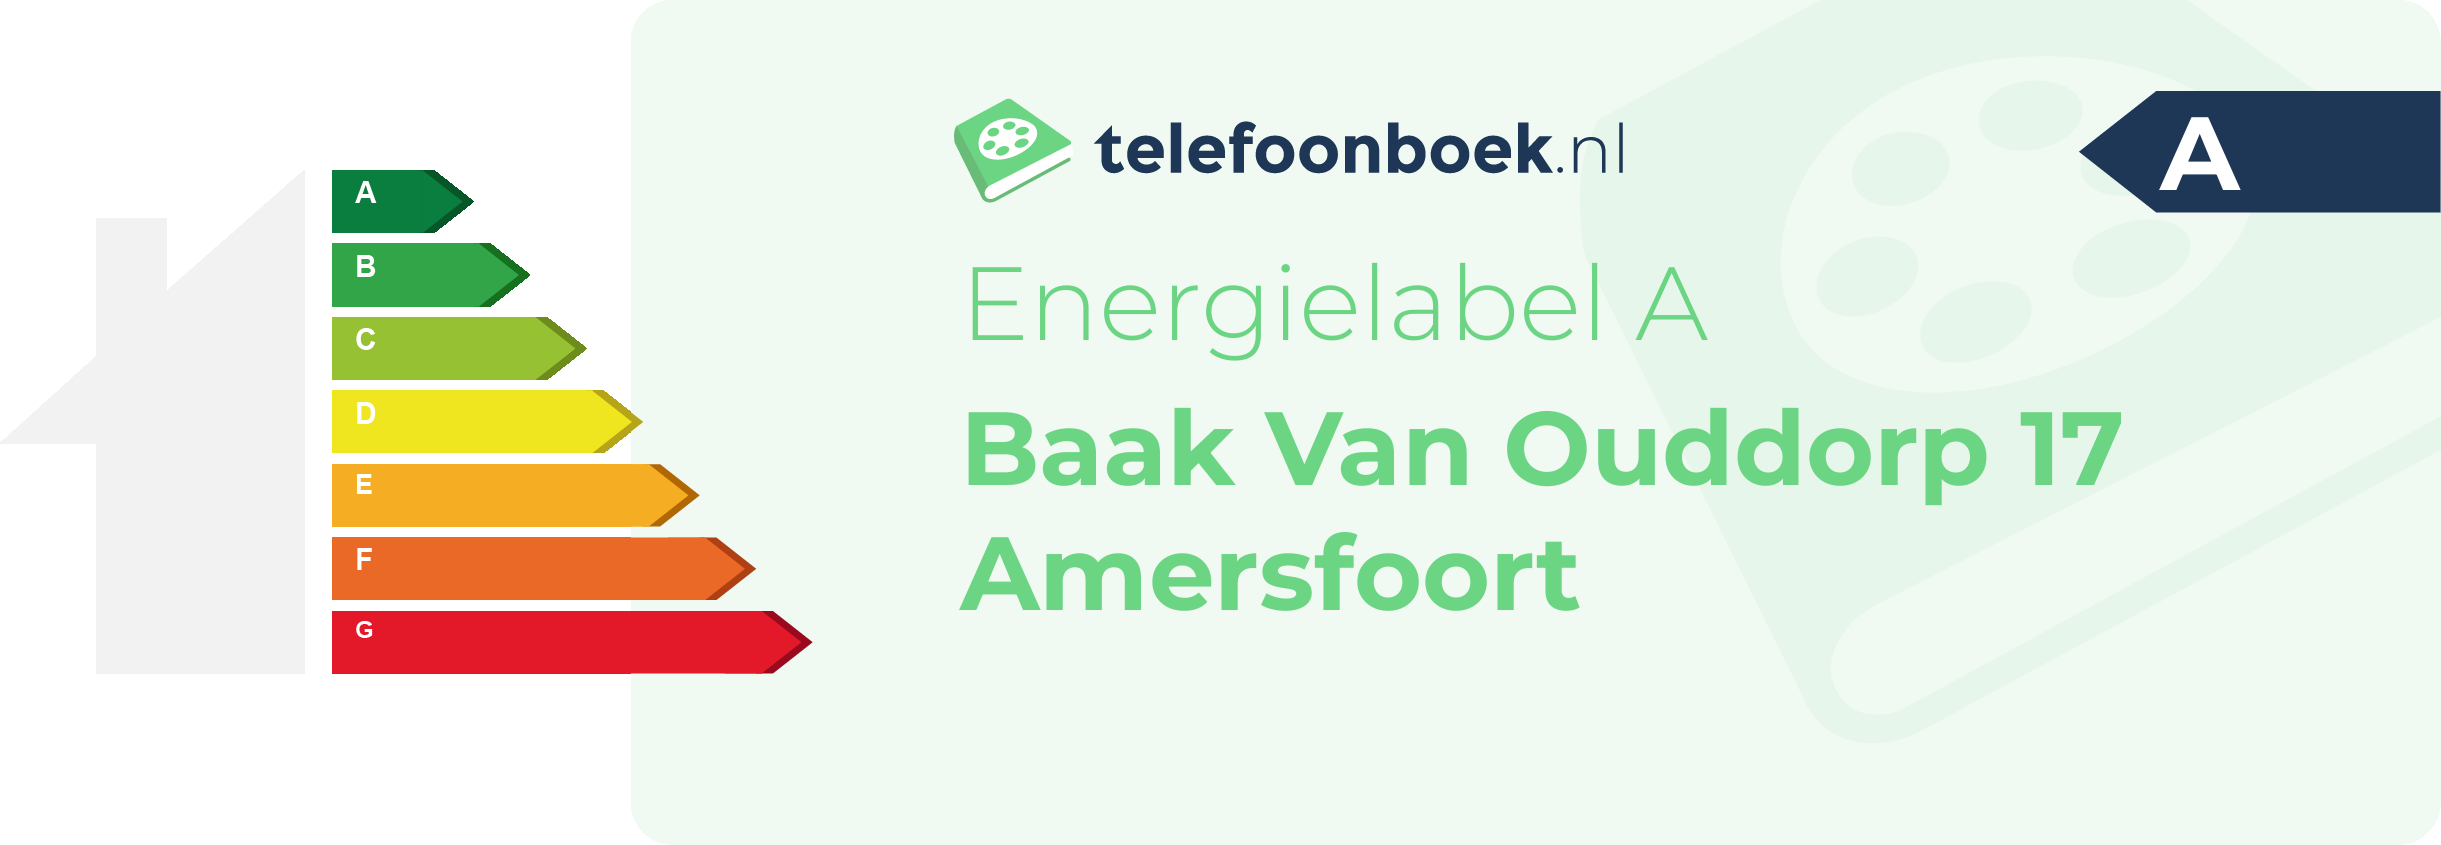 Energielabel Baak Van Ouddorp 17 Amersfoort